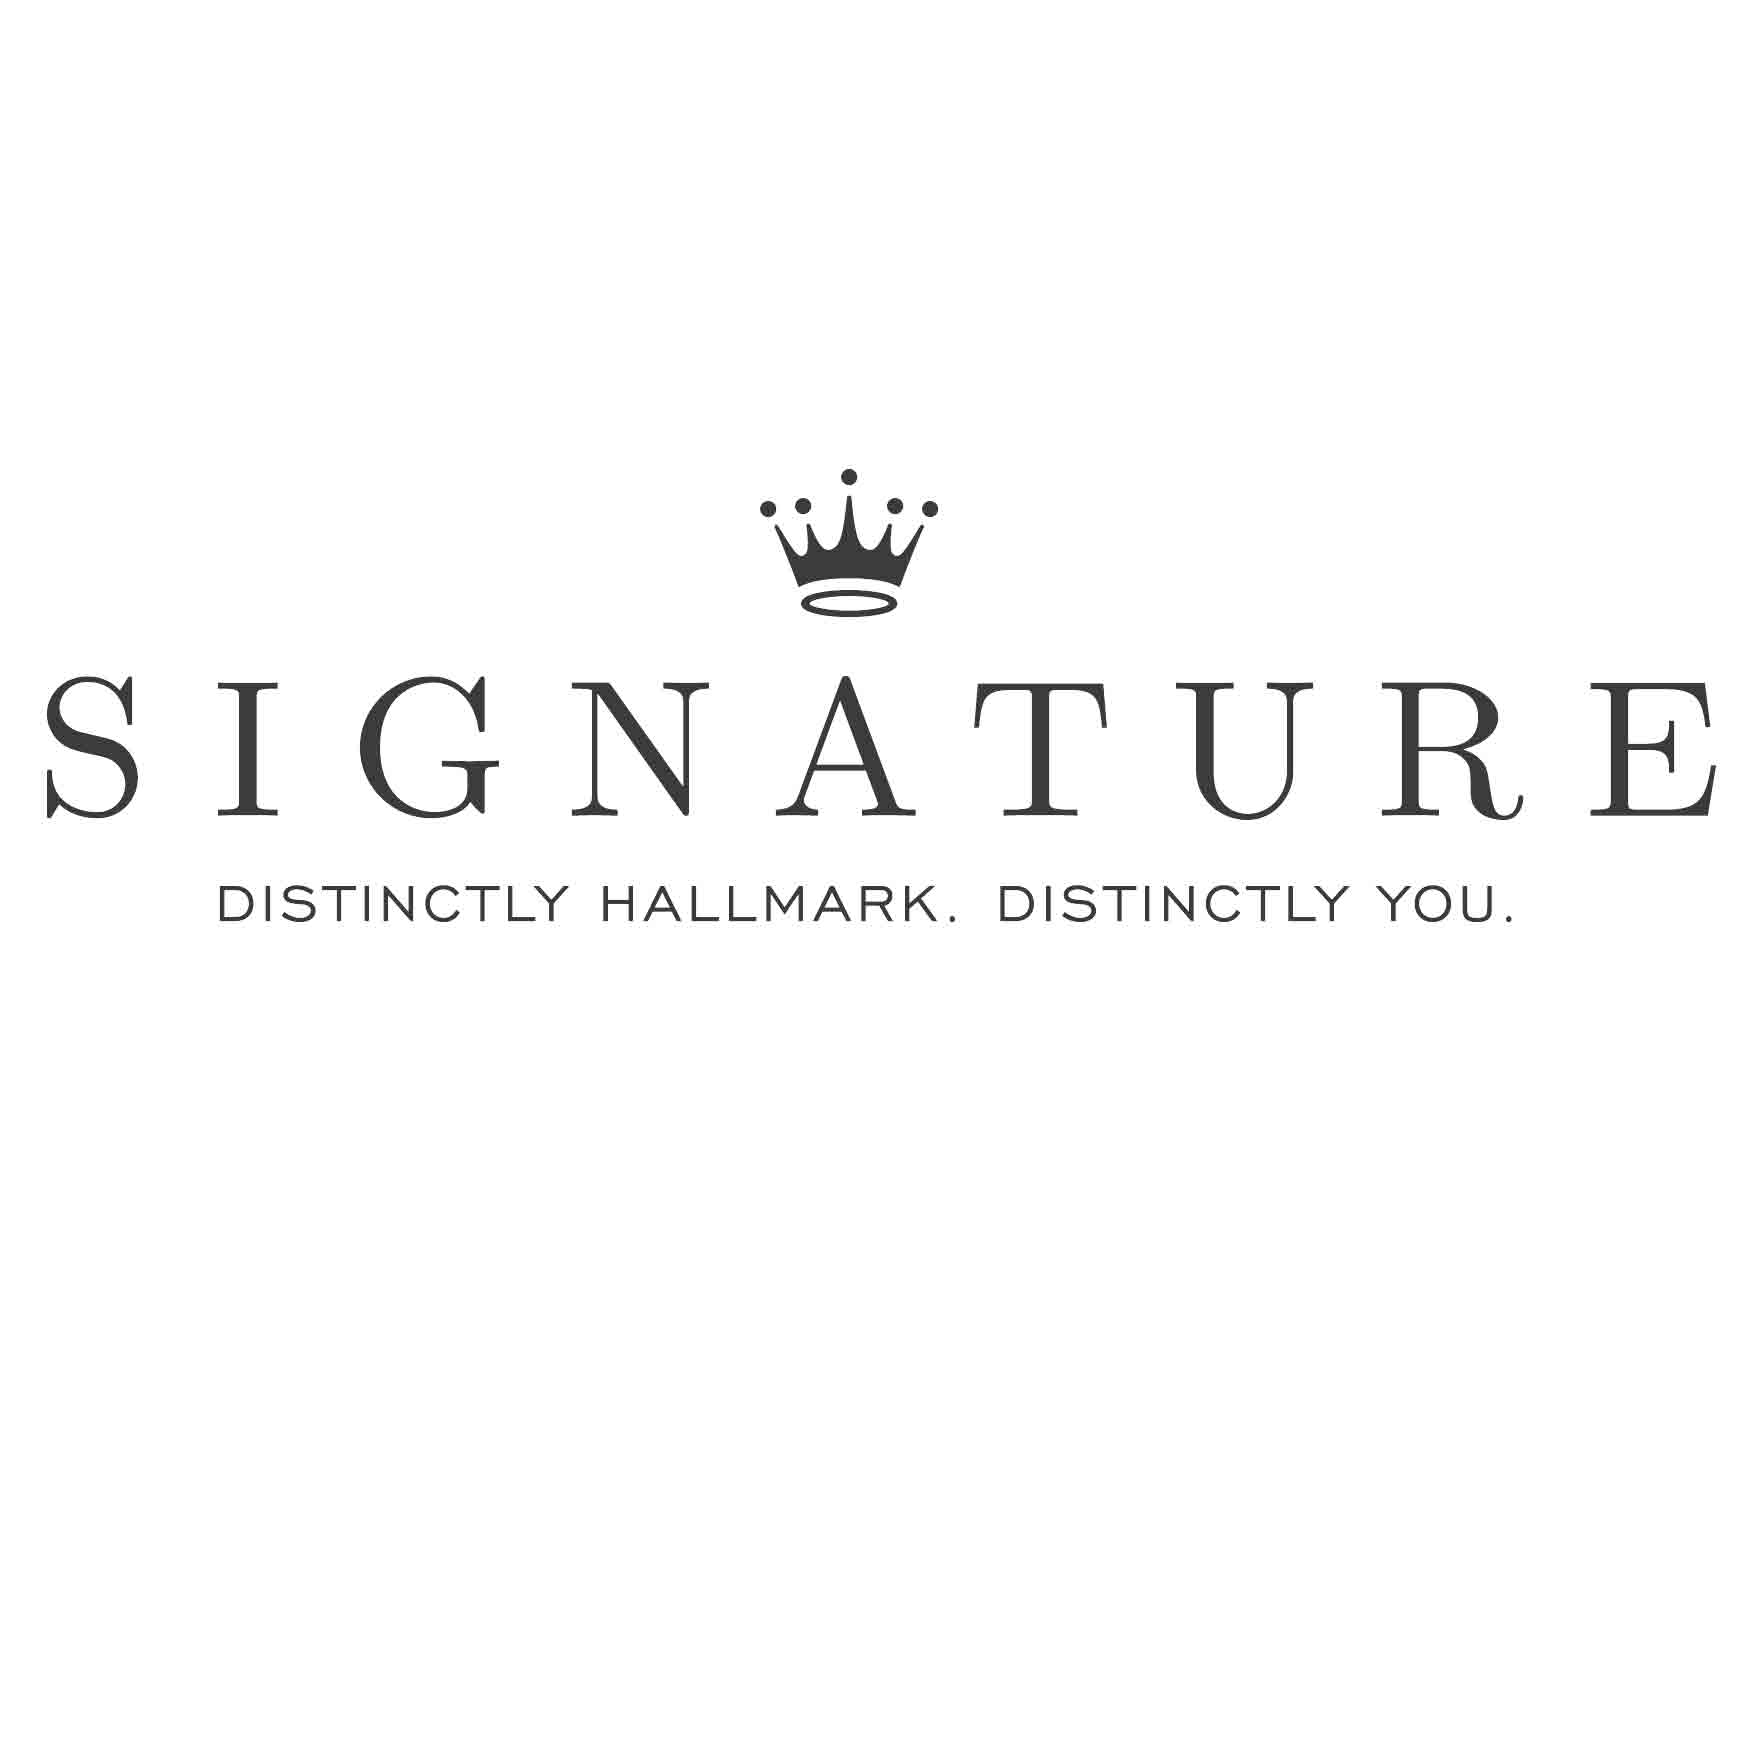 Hallmark Logo - Hallmark Signature Logo - Hallmark Corporate